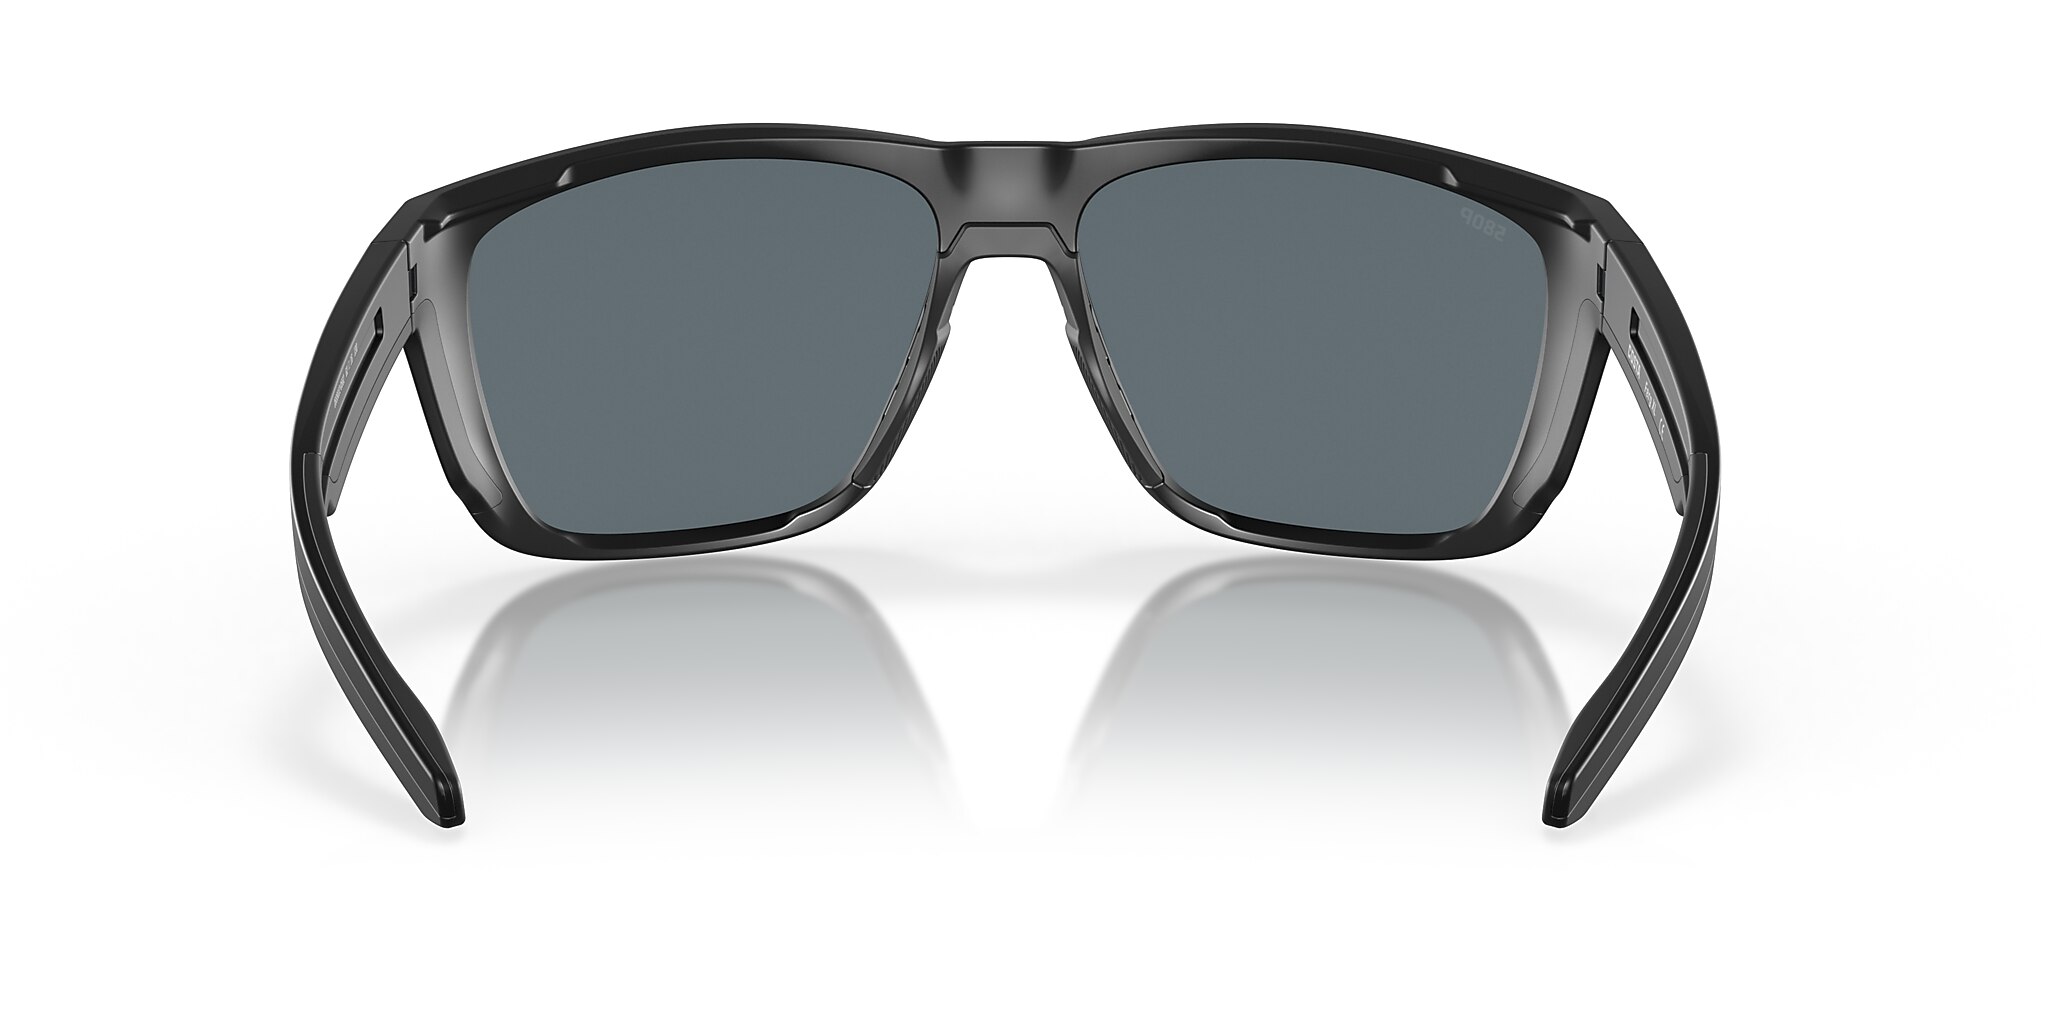 Ferg XL Polarized Sunglasses in Blue Mirror | Costa Del Mar®